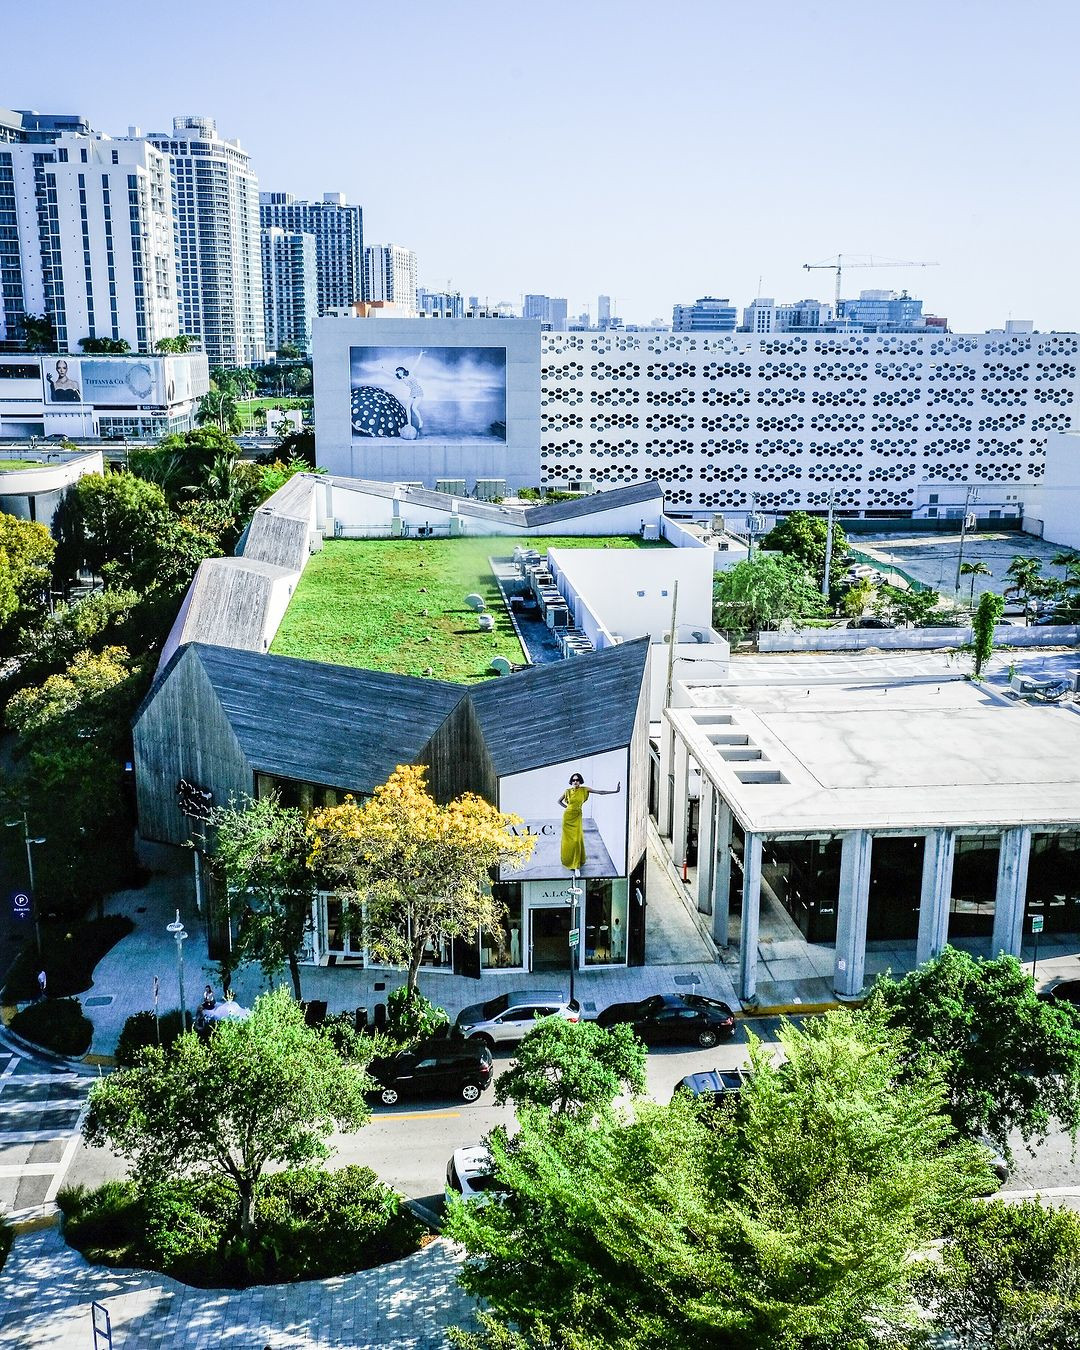 The Miami Design District